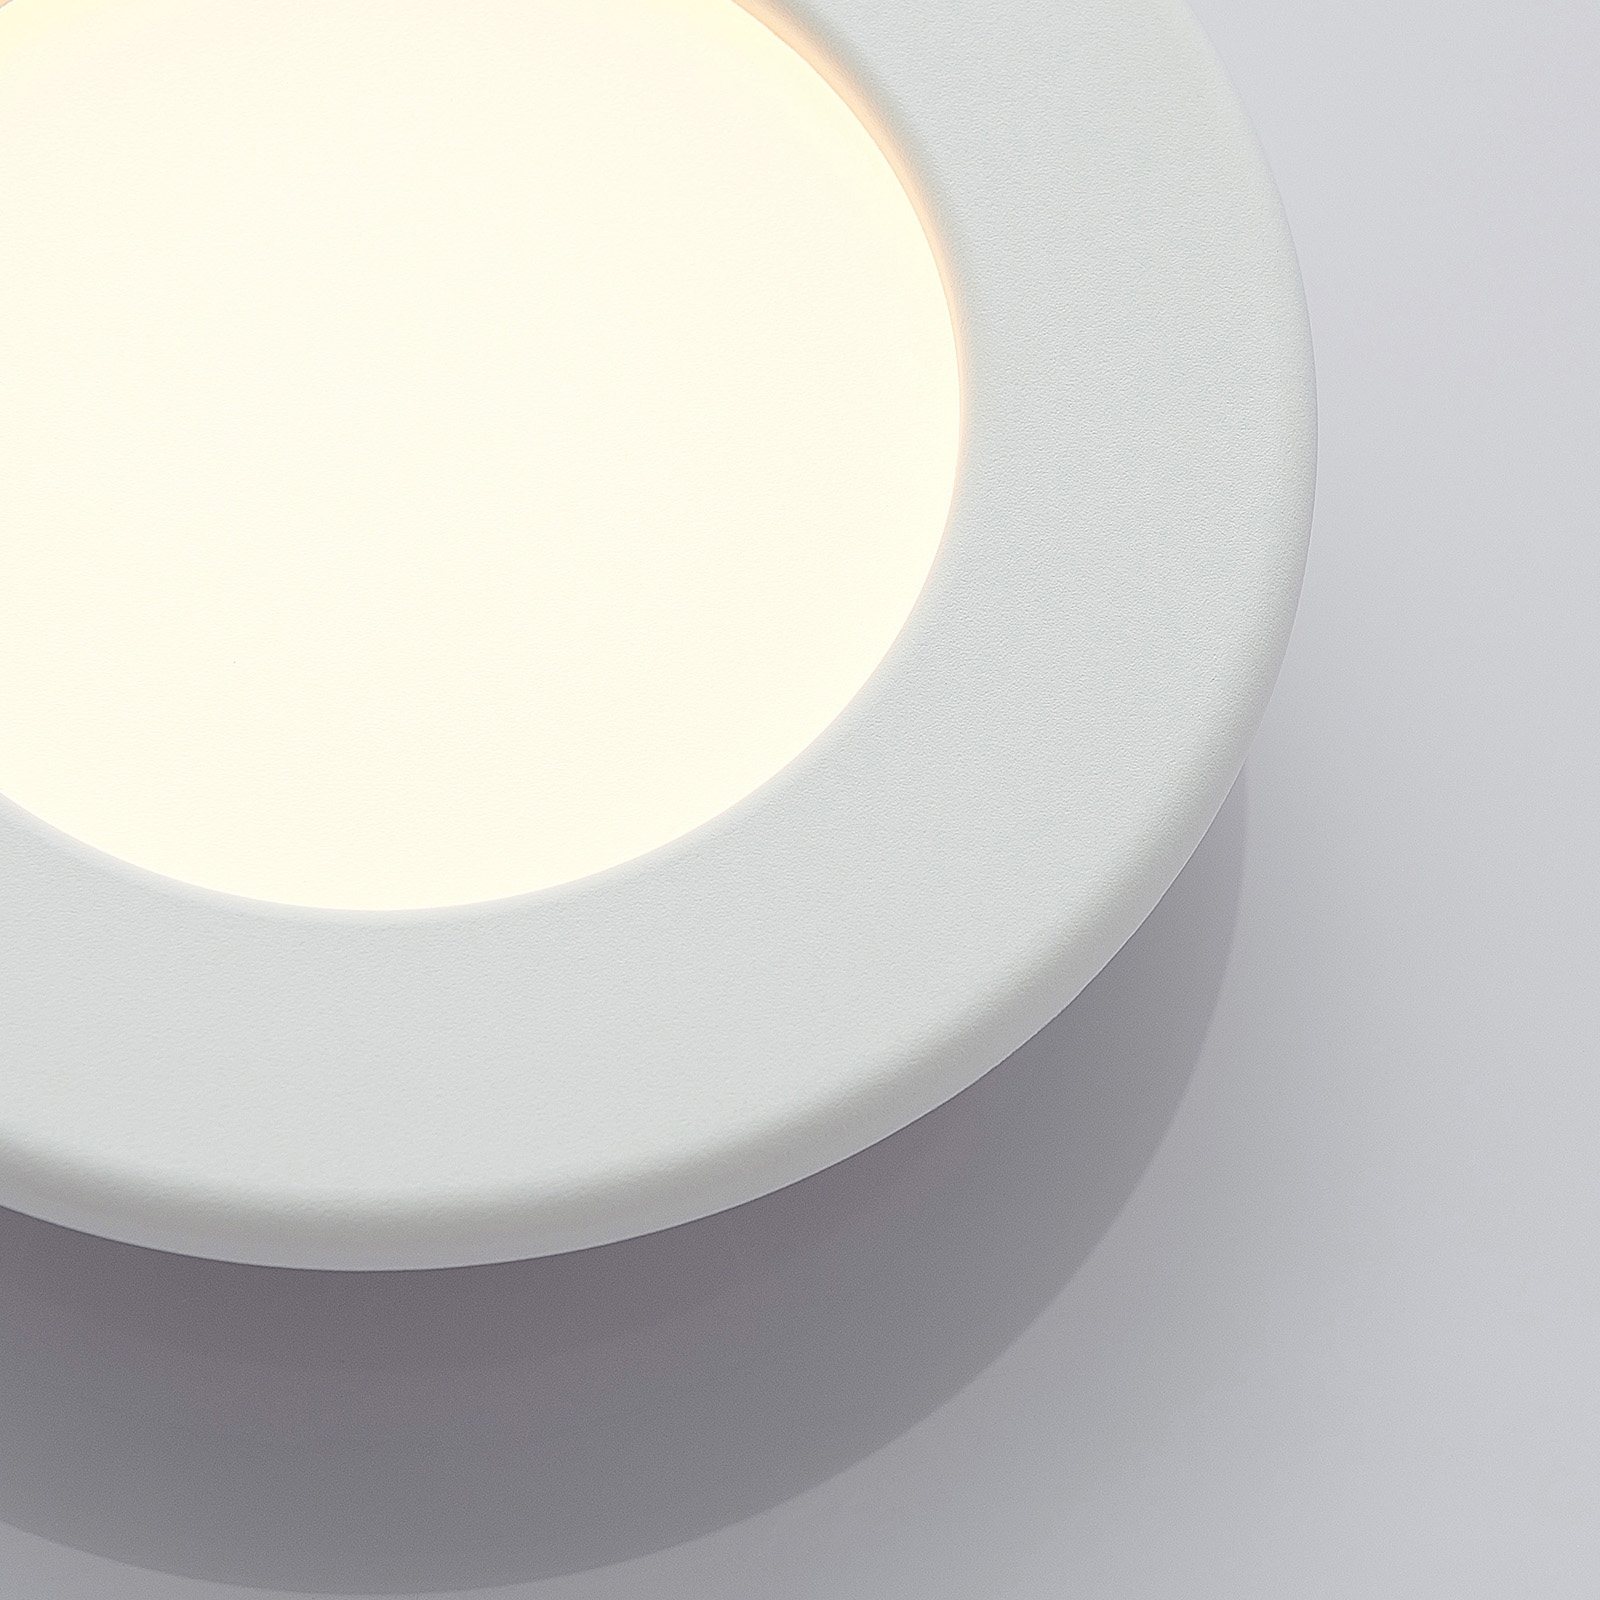 Joki LED downlight white 3000 K round 11.5 cm